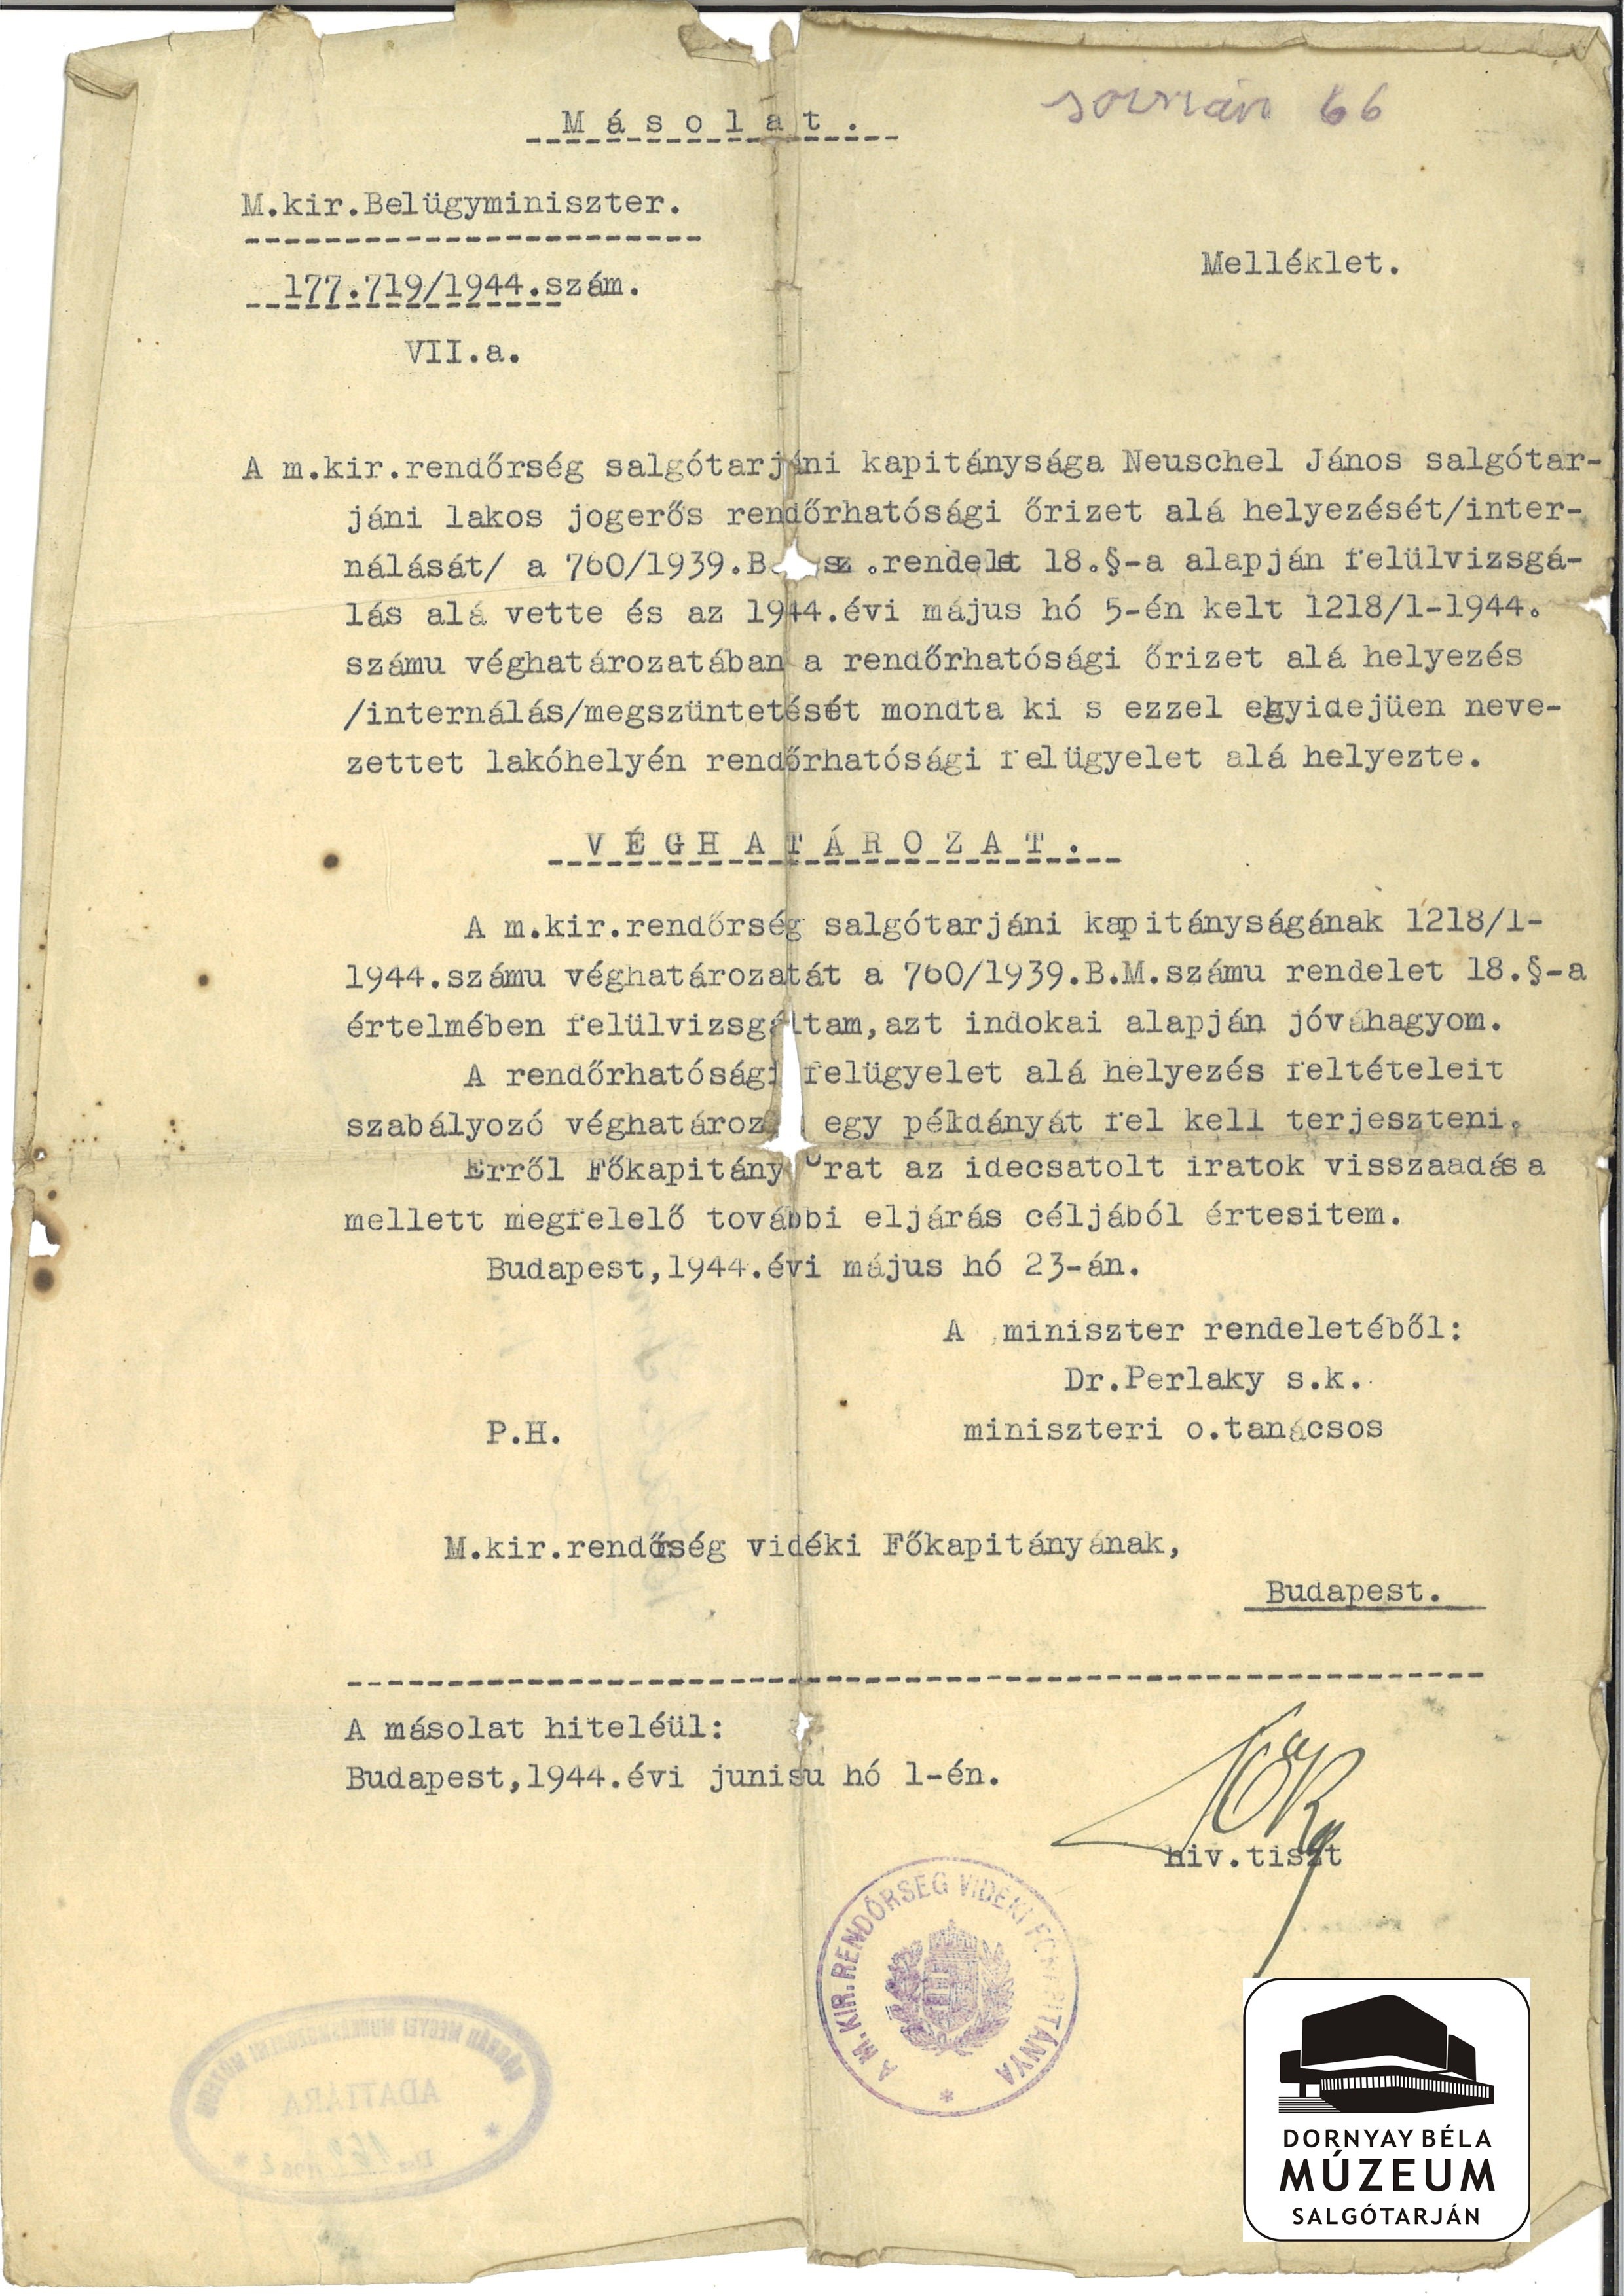 Neuschel János st-i lakos internálási fellebbezését nem fogadták el. (Dornyay Béla Múzeum, Salgótarján CC BY-NC-SA)